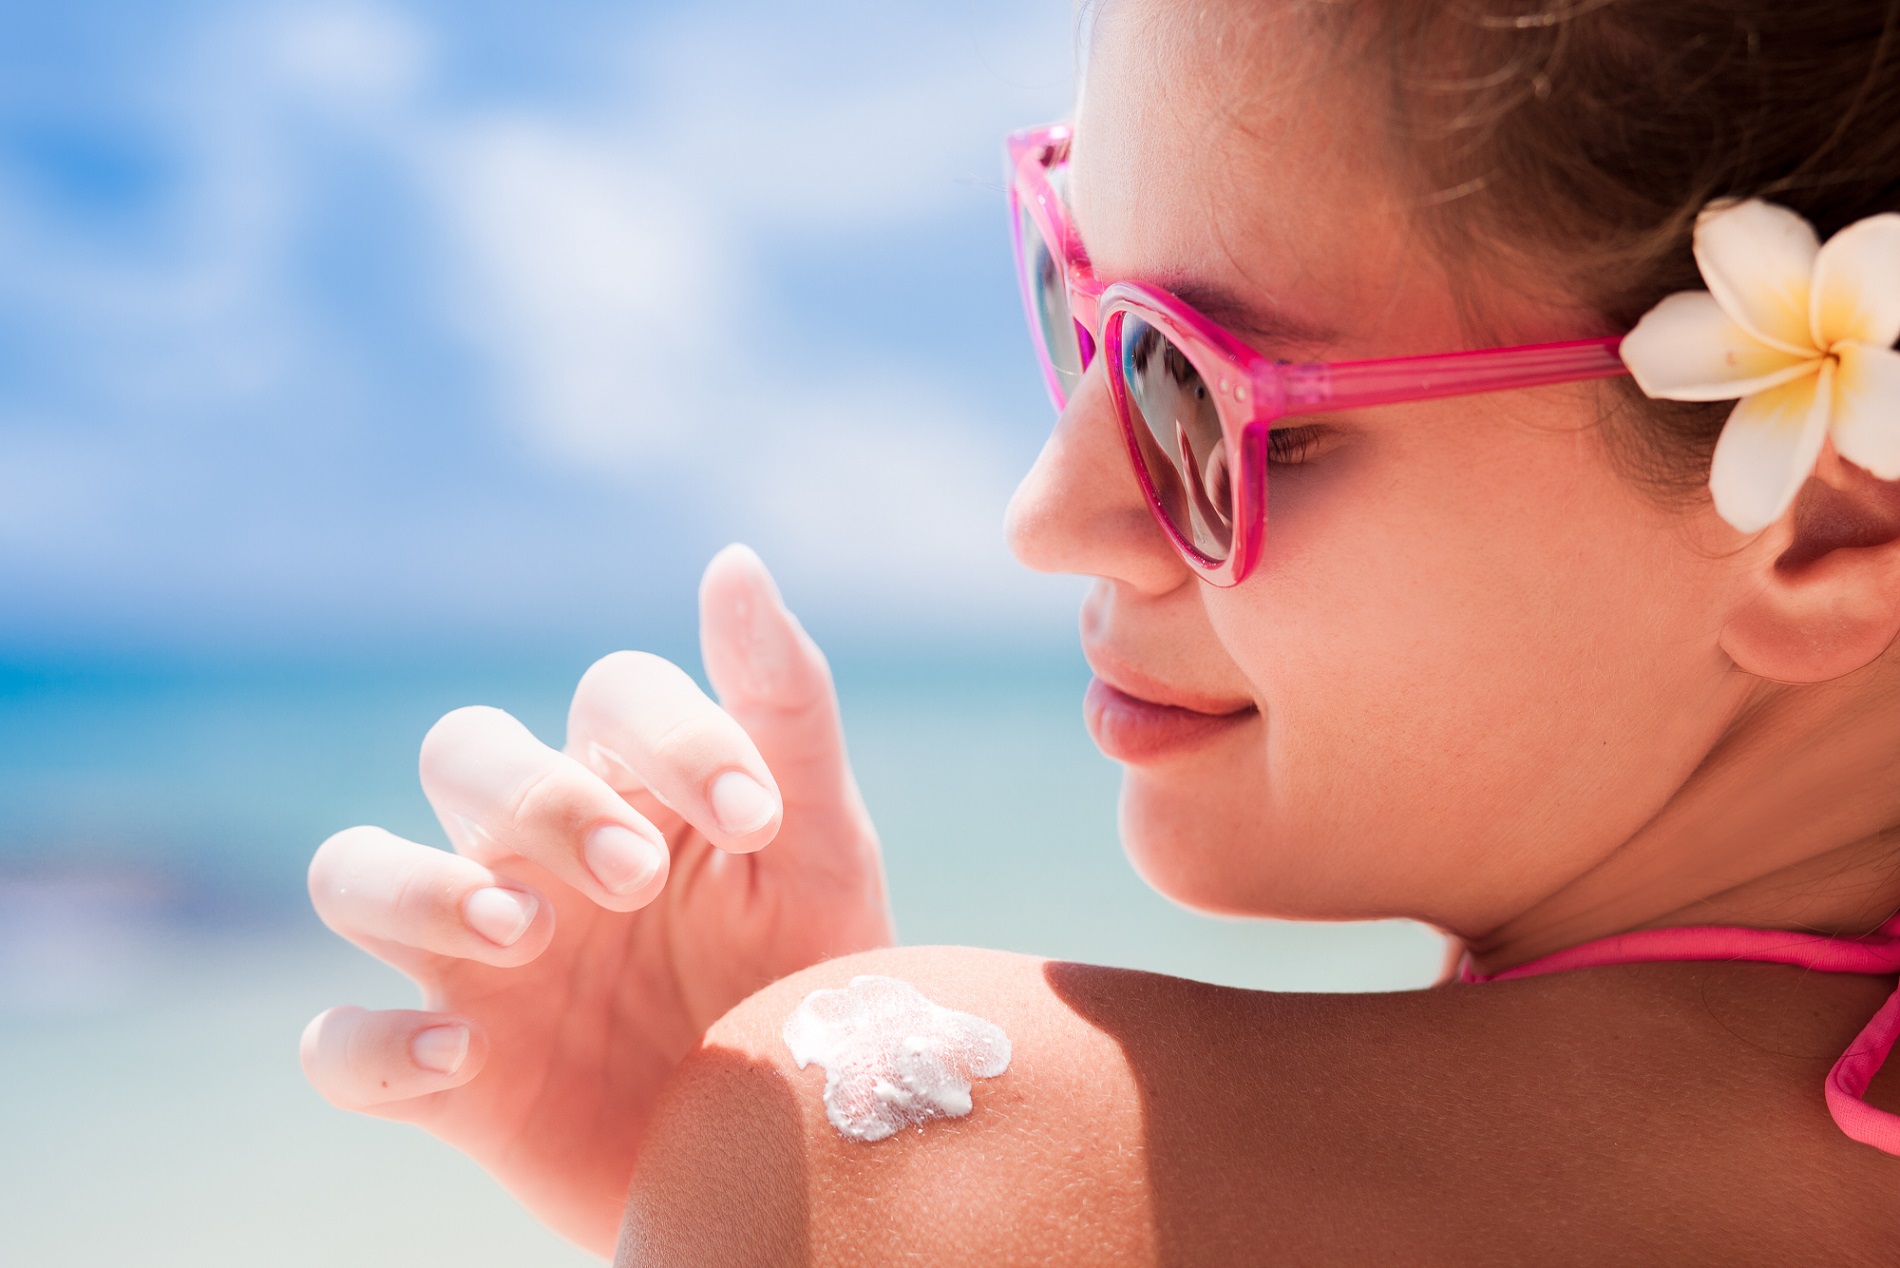 La crème solaire est l’alliée indispensable pour prévenir le cancer de la peau. © Elena Rudakova, Shutterstock